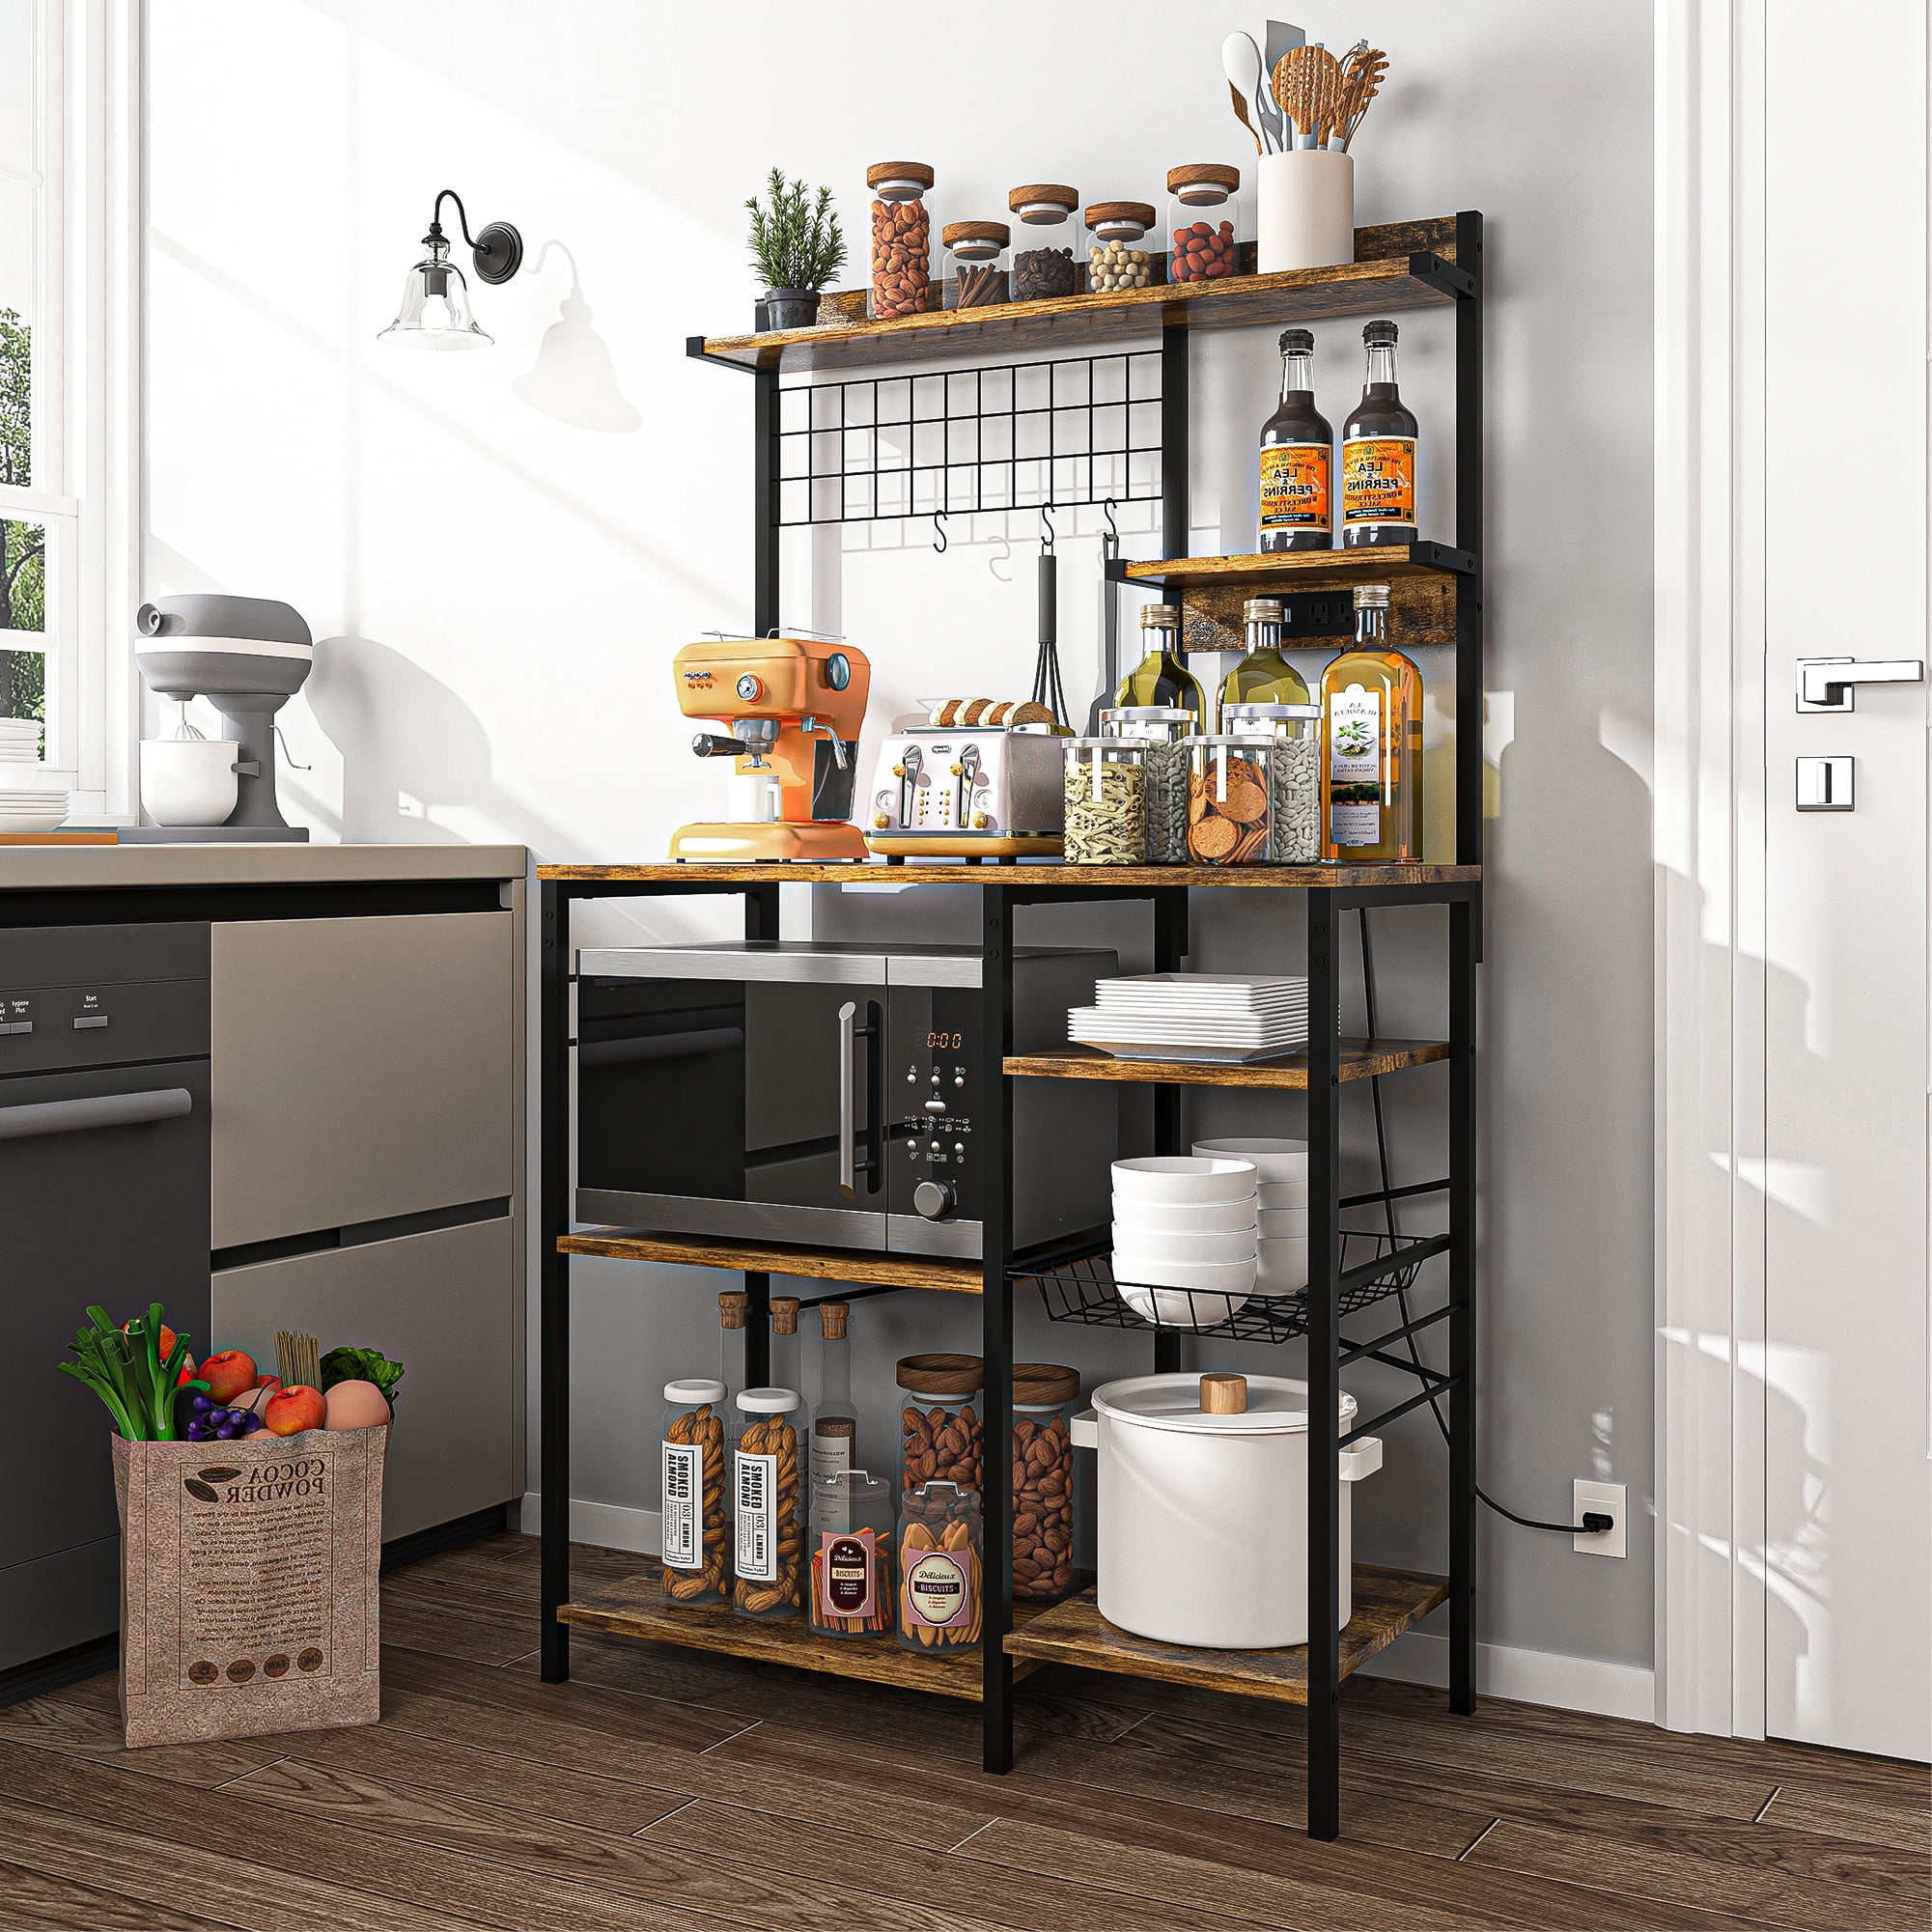 Wooden Kitchen Appliances Slider Multipurpose Under Cabinet